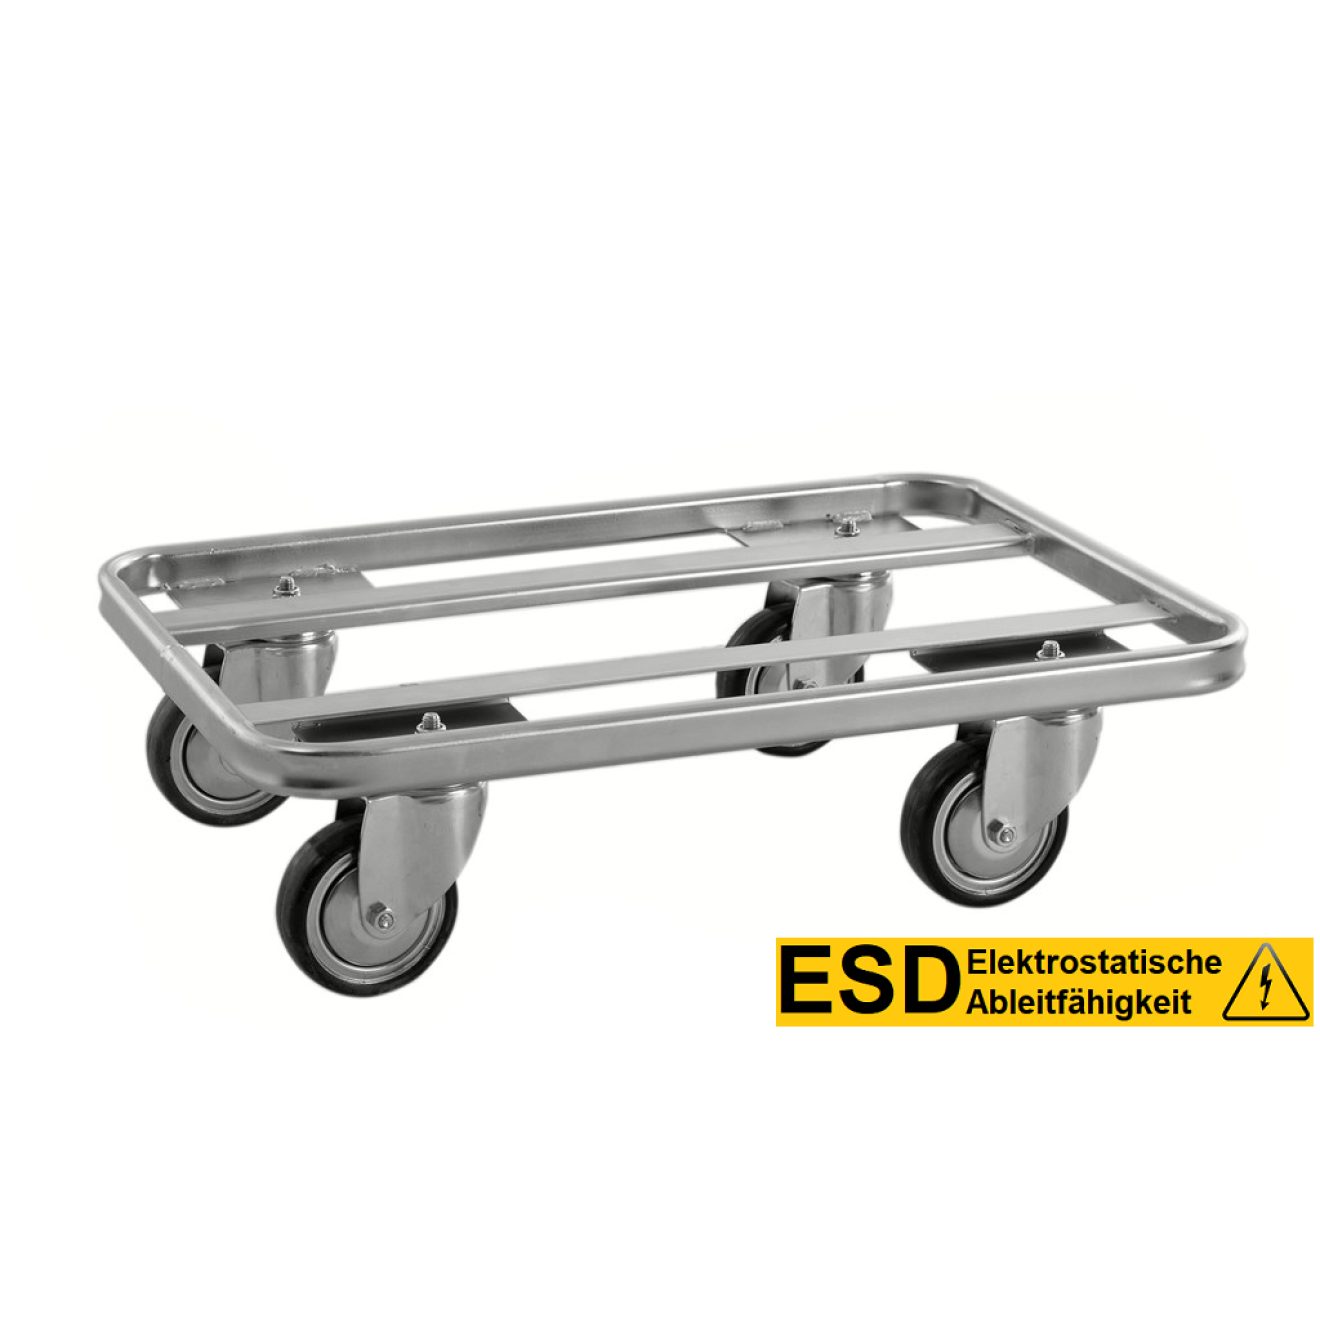 ESD Rollwagen - Transportroller - Elektrolytisch verzinkt - 4 Drehgestellrollen, 100 mm Ø ohne Bremse - Tragfähigkeit: 300 kg - KM673-ESD - Kongamek